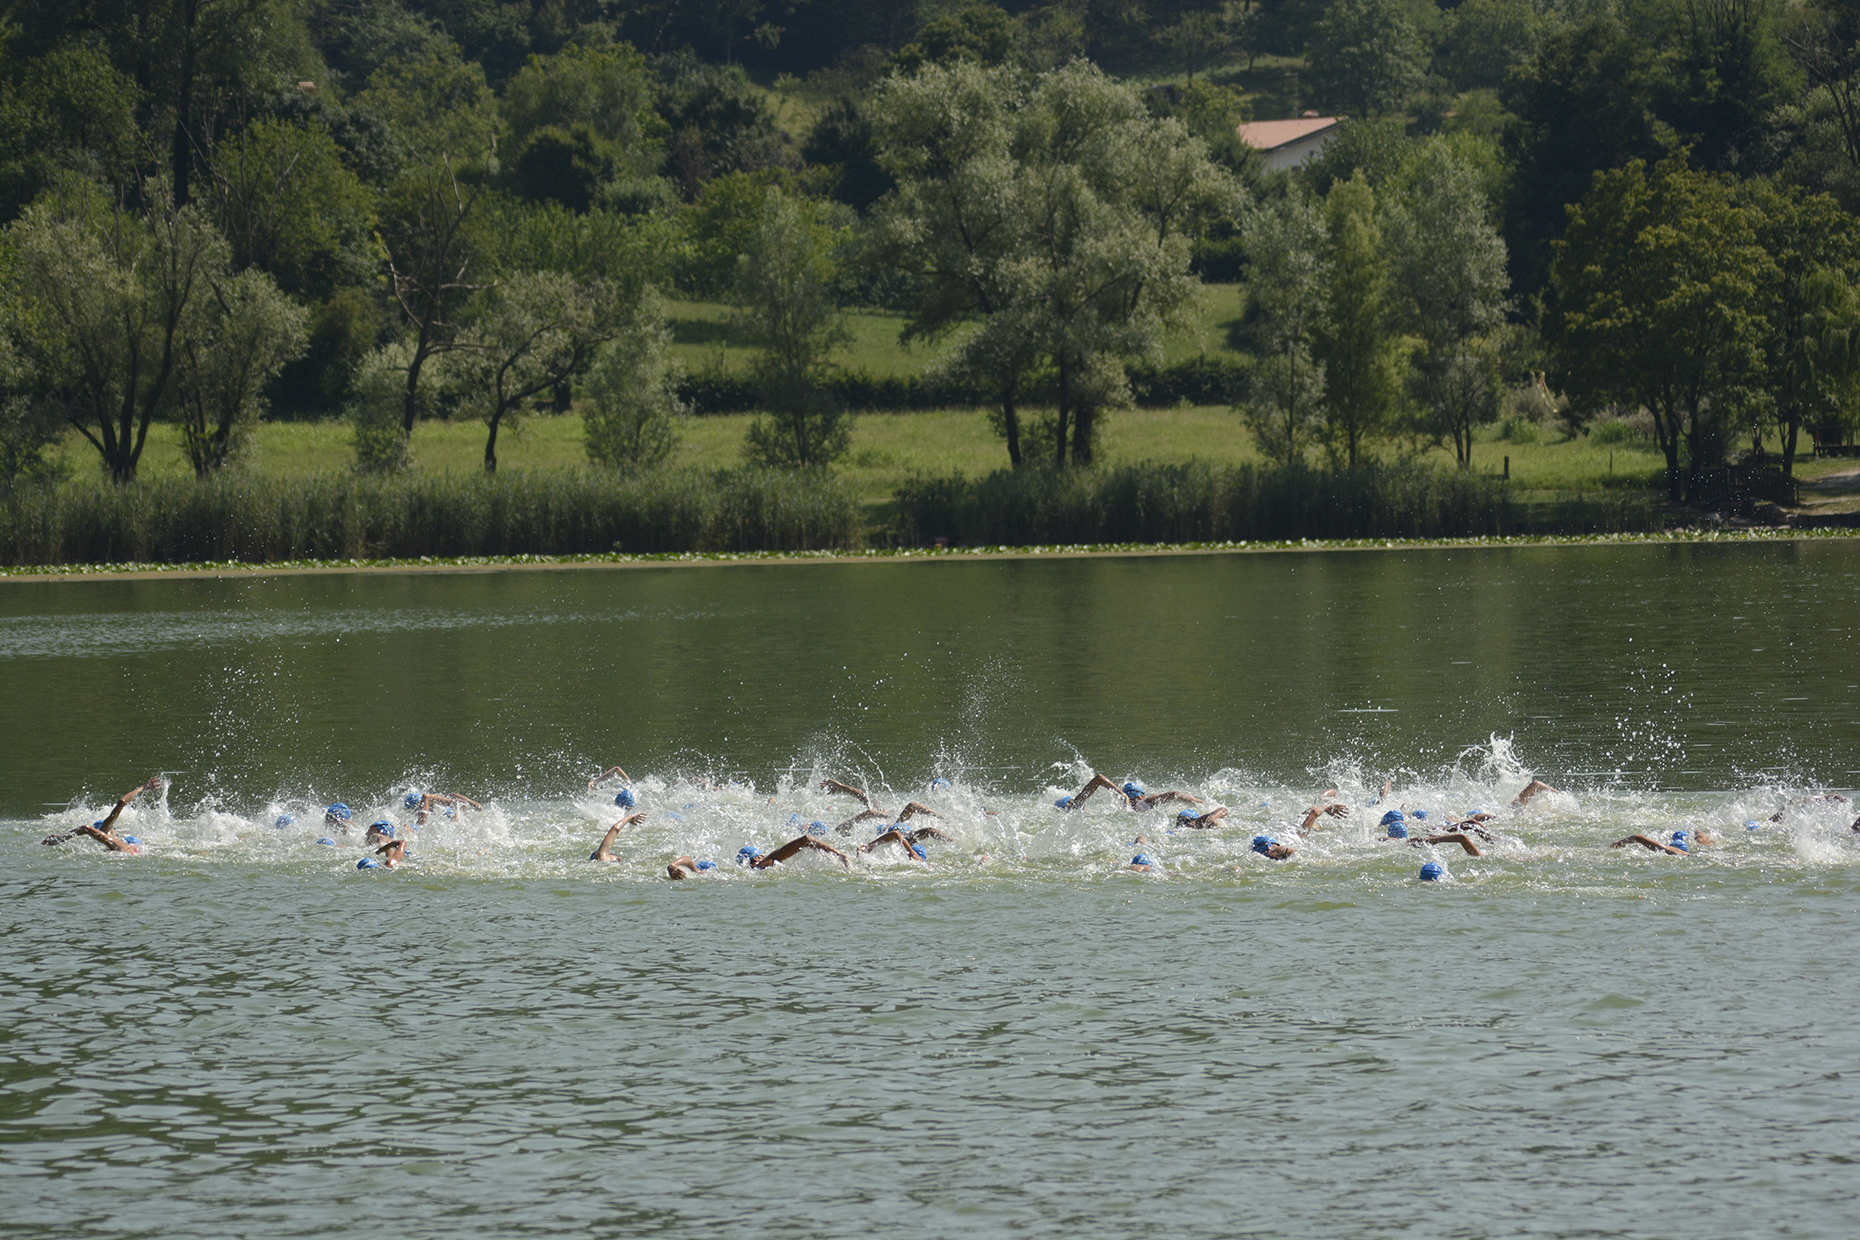 Il Triathlon torna sui laghi di Revine: appuntamento domenica 4 luglio